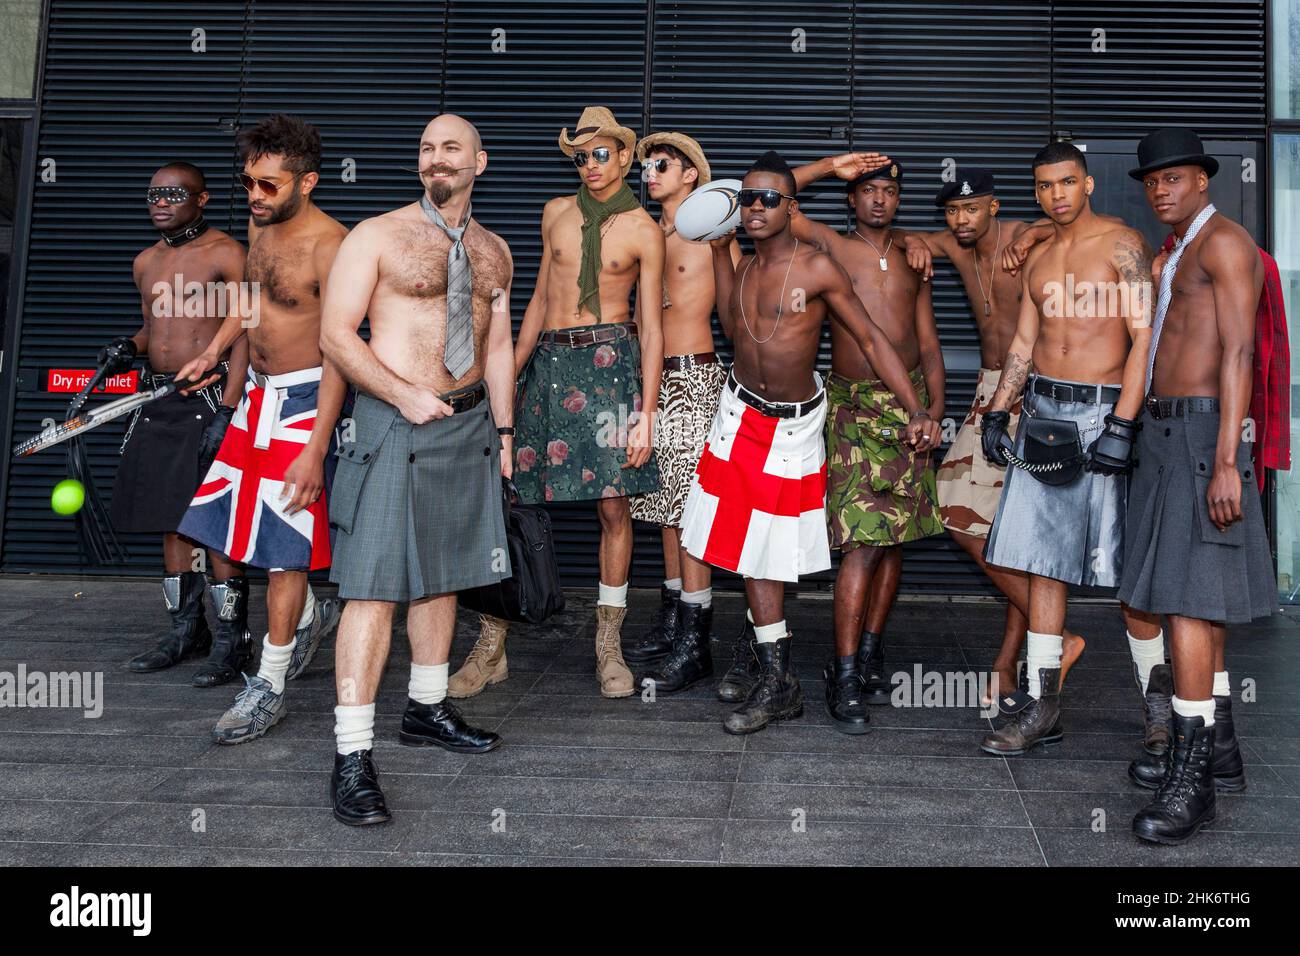 Gruppo di uomini che indossano forni di stilista, settimana della moda alternativa allo Spitalfields Market, Londra Foto Stock